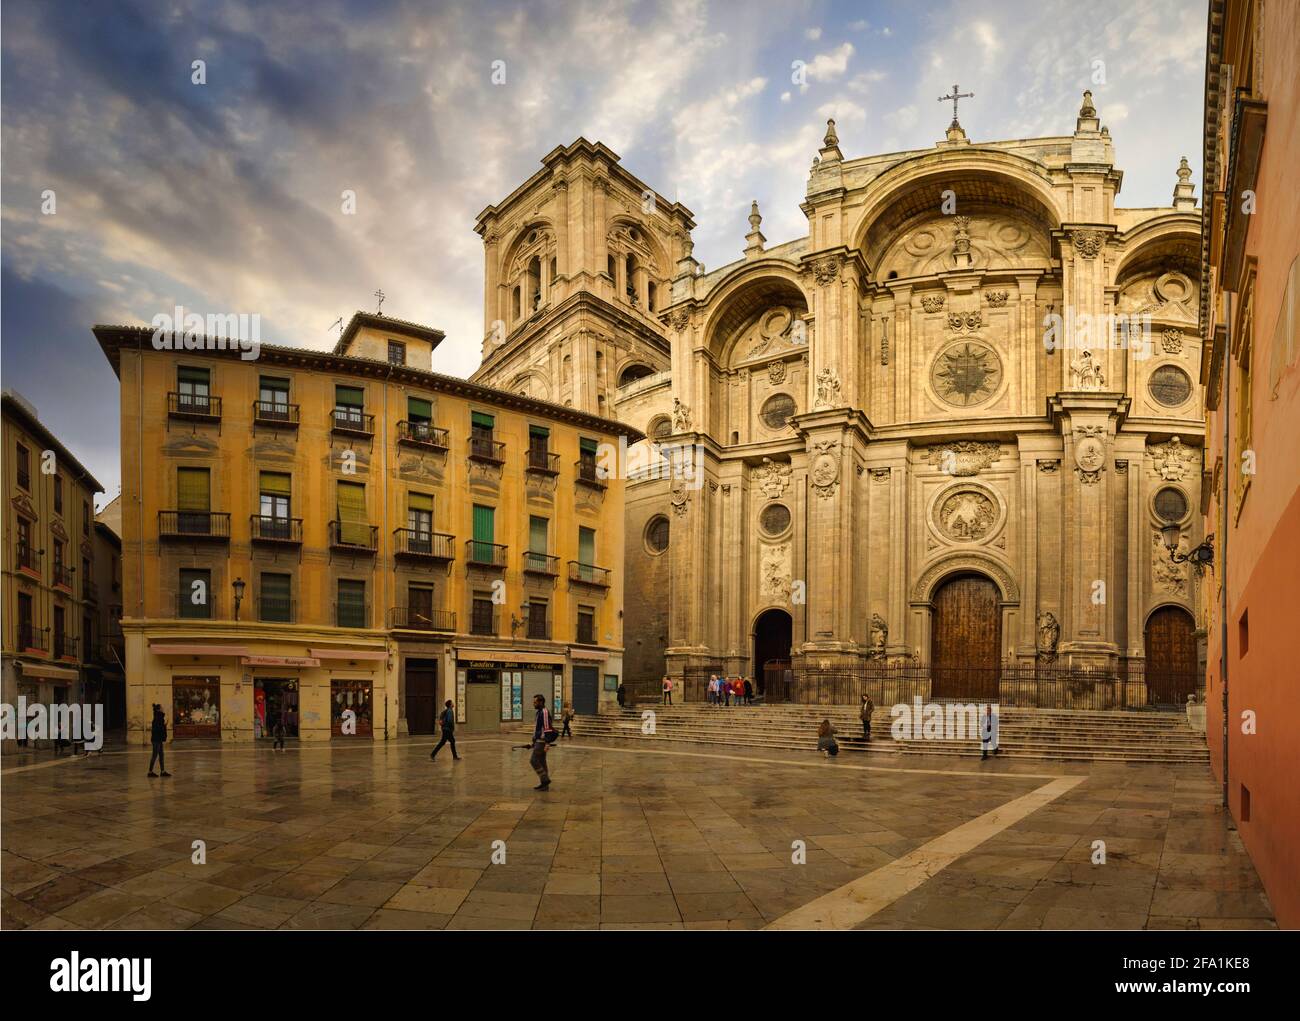 Granada Cathedral, Granada, Granada Province, Andalusia Autonomous Community, Spain Stock Photo